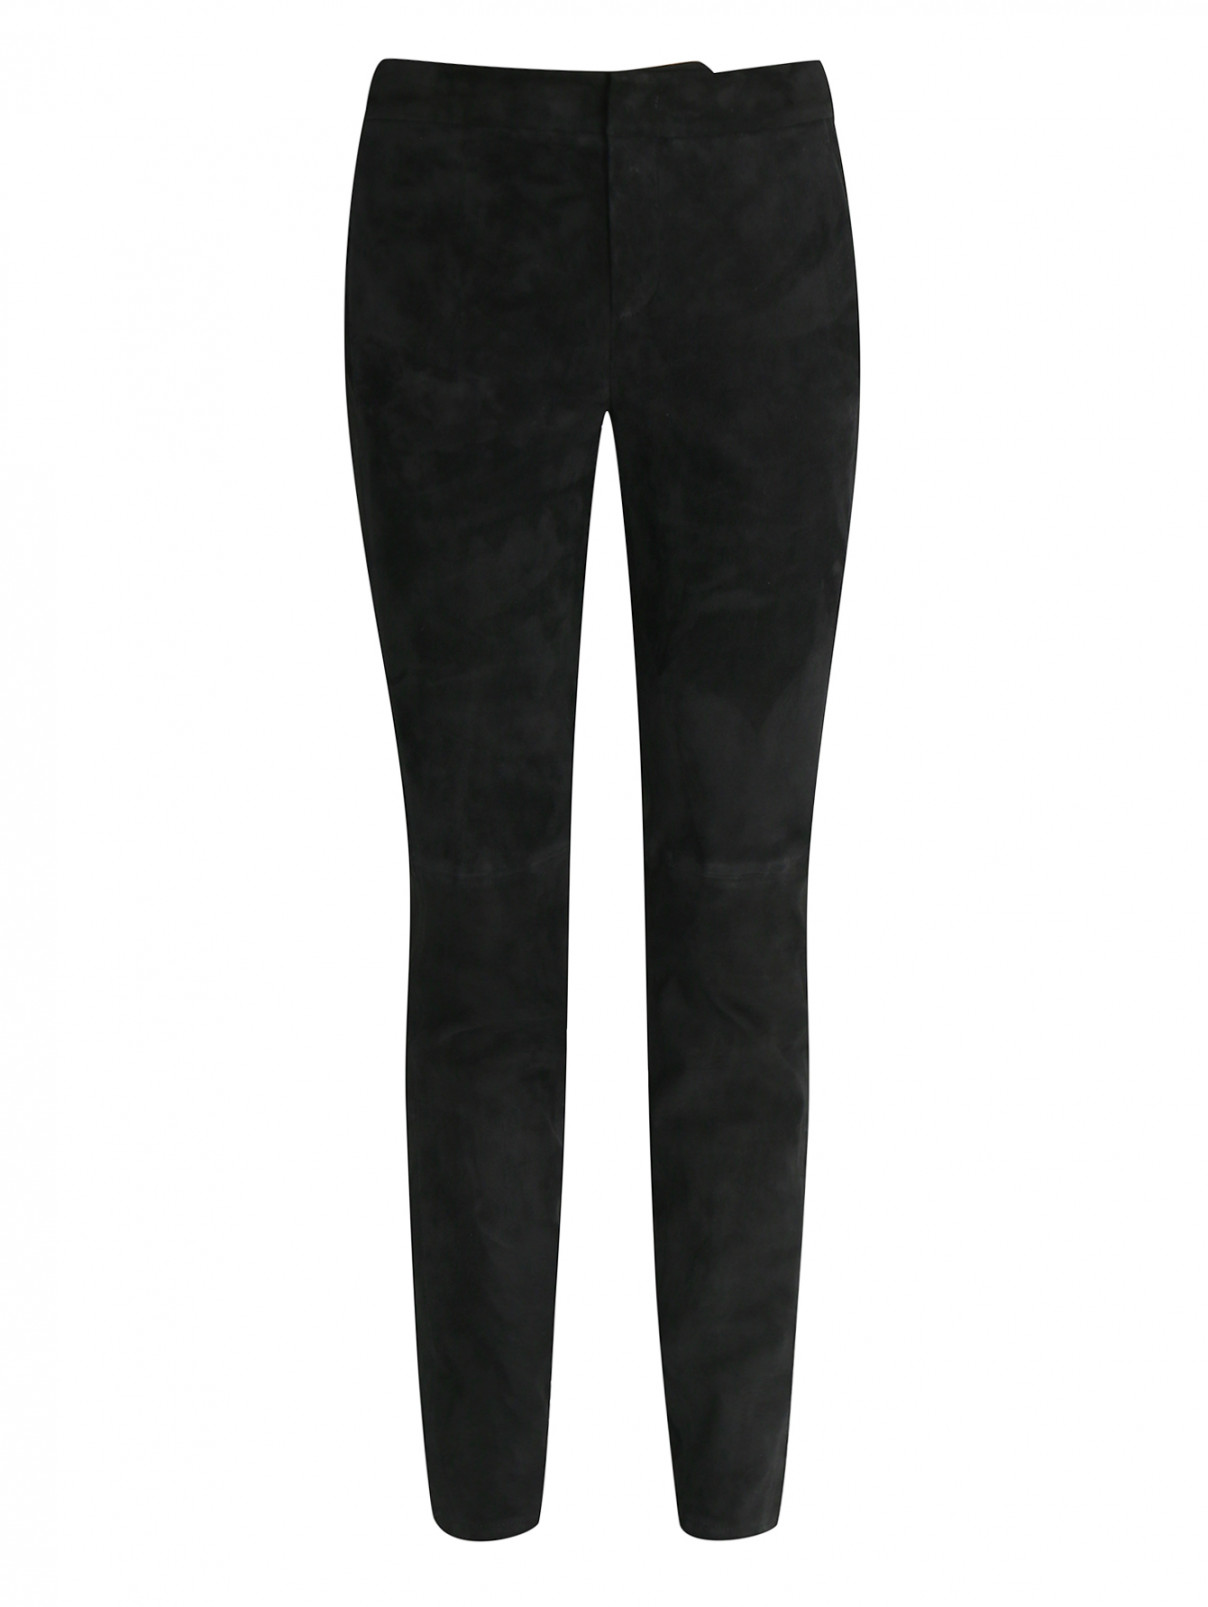 Зауженные брюки из замши с молниями сбоку Strenesse  –  Общий вид  – Цвет:  Черный